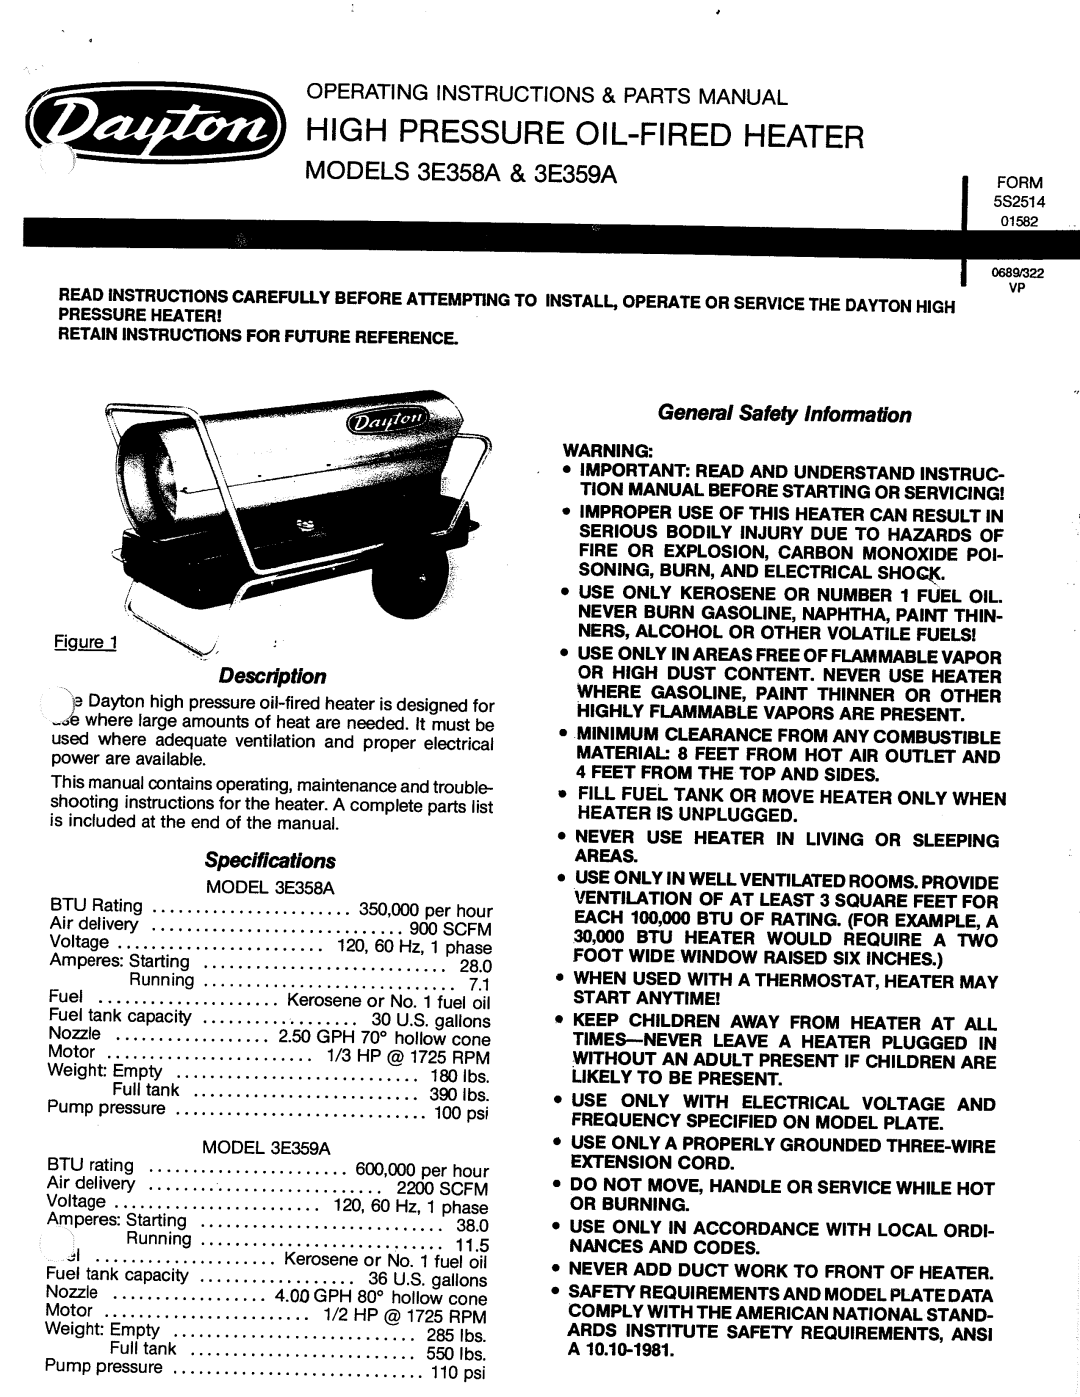 Dayton 3E358A, 3E359A manual 